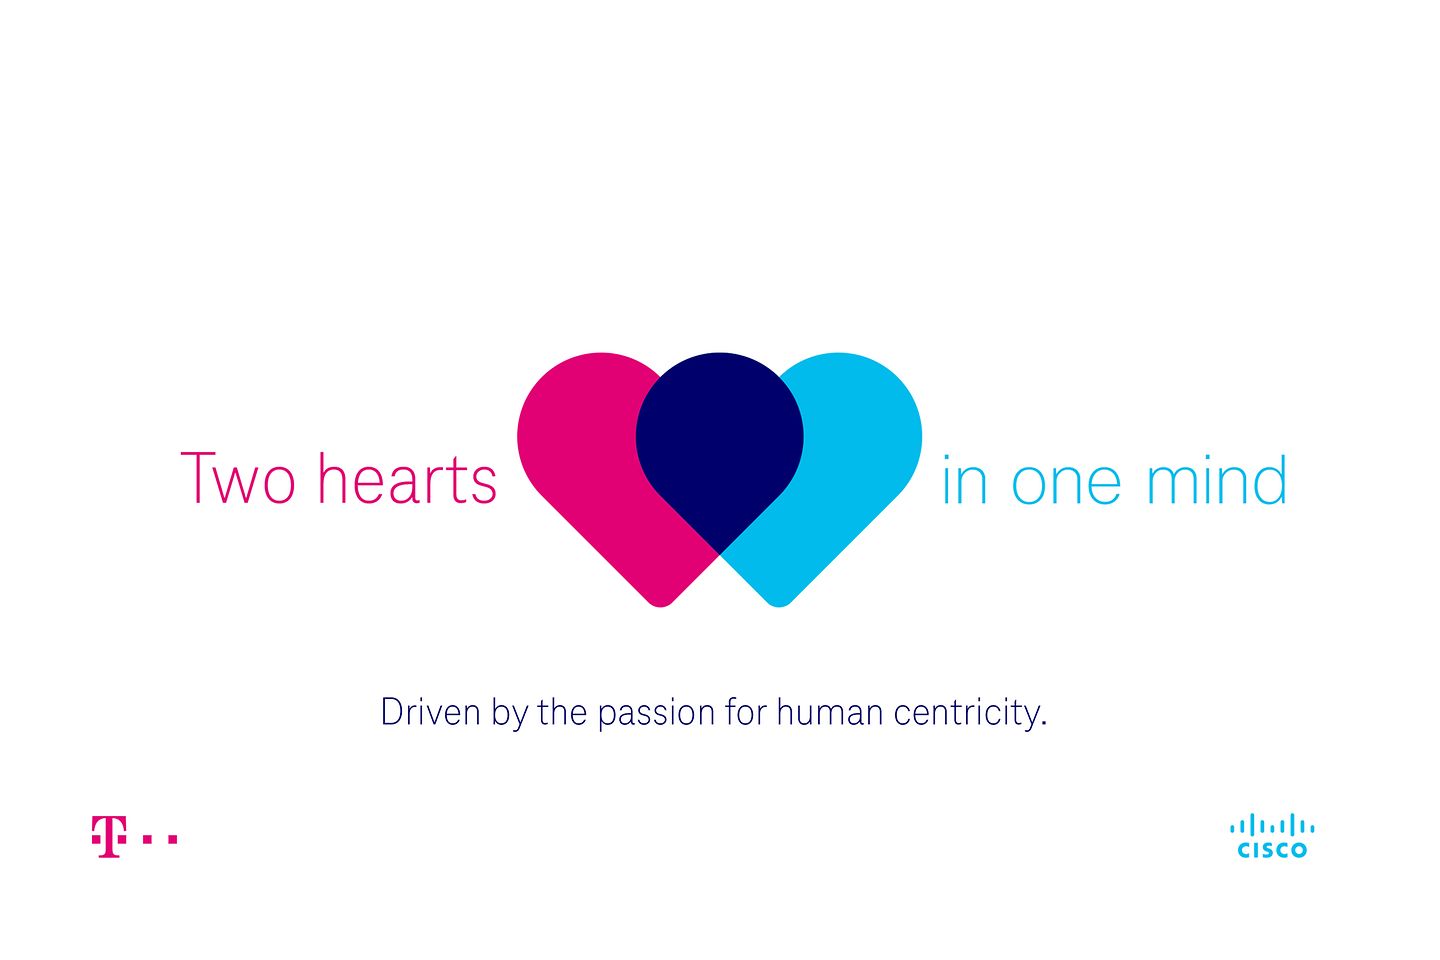 A droite : Deux cœurs qui battent, à gauche : Un partenariat exceptionnel, en bas : Notre passion est votre succès